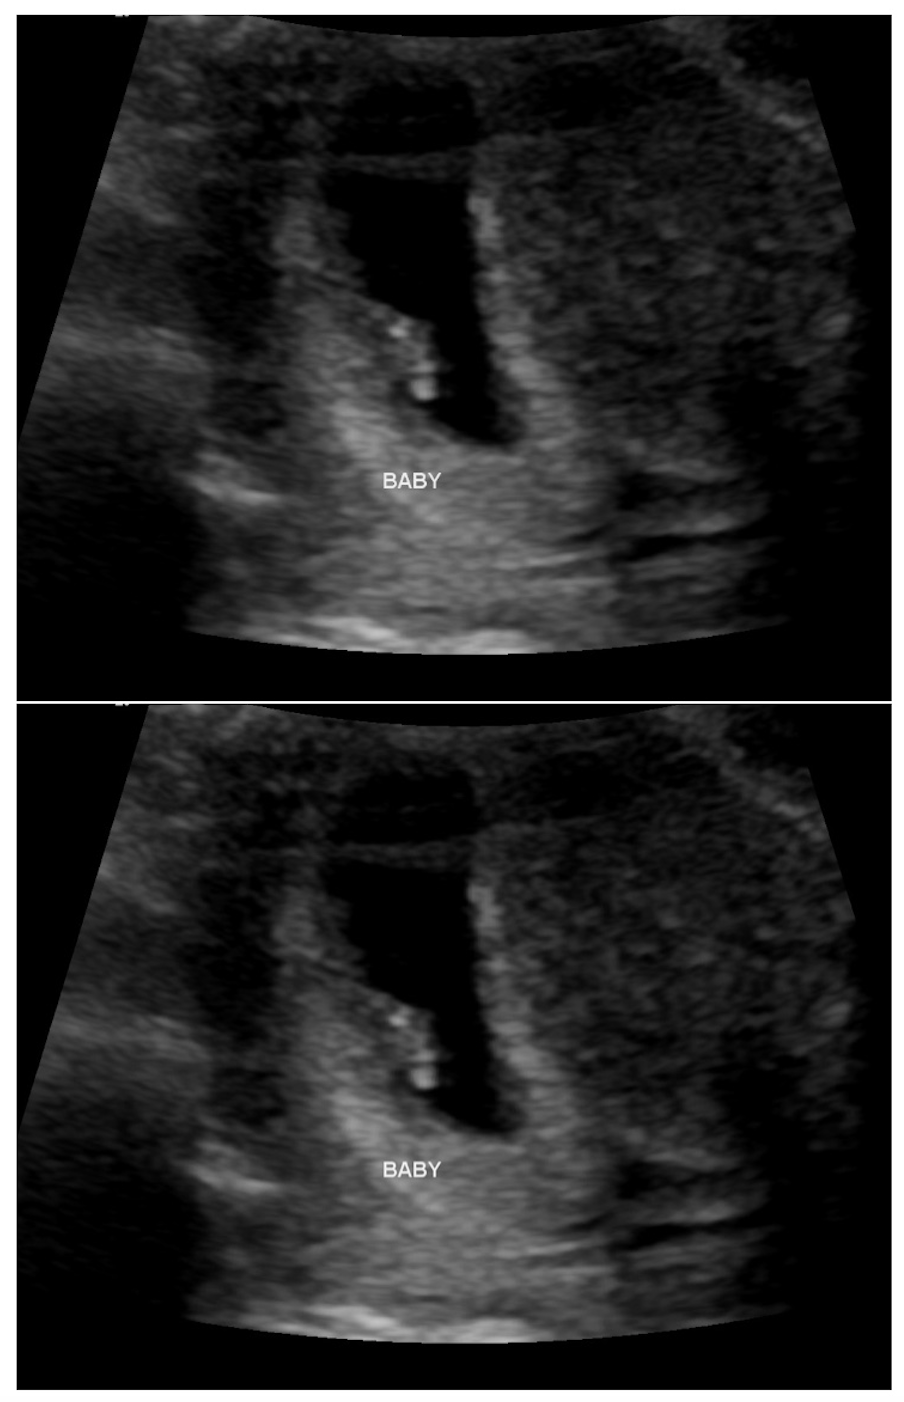 Ultrasound photos